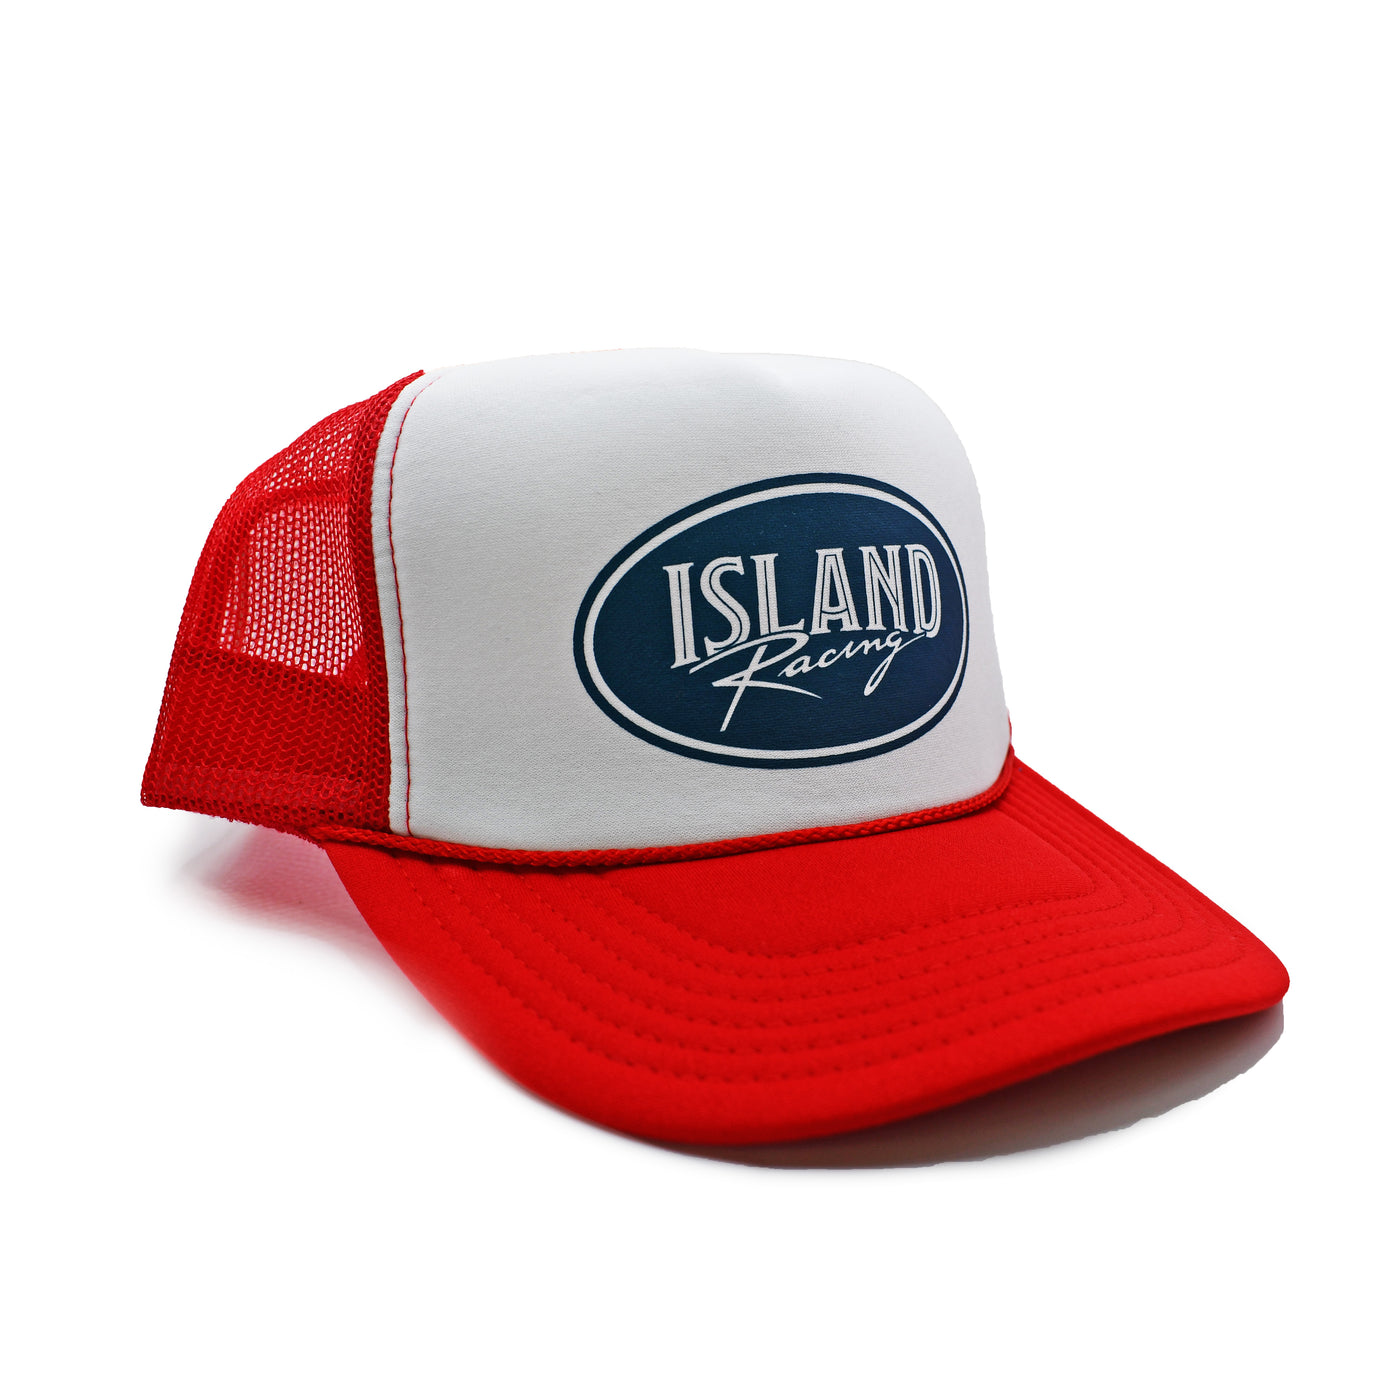 Island Racing Oval Foamie Hat